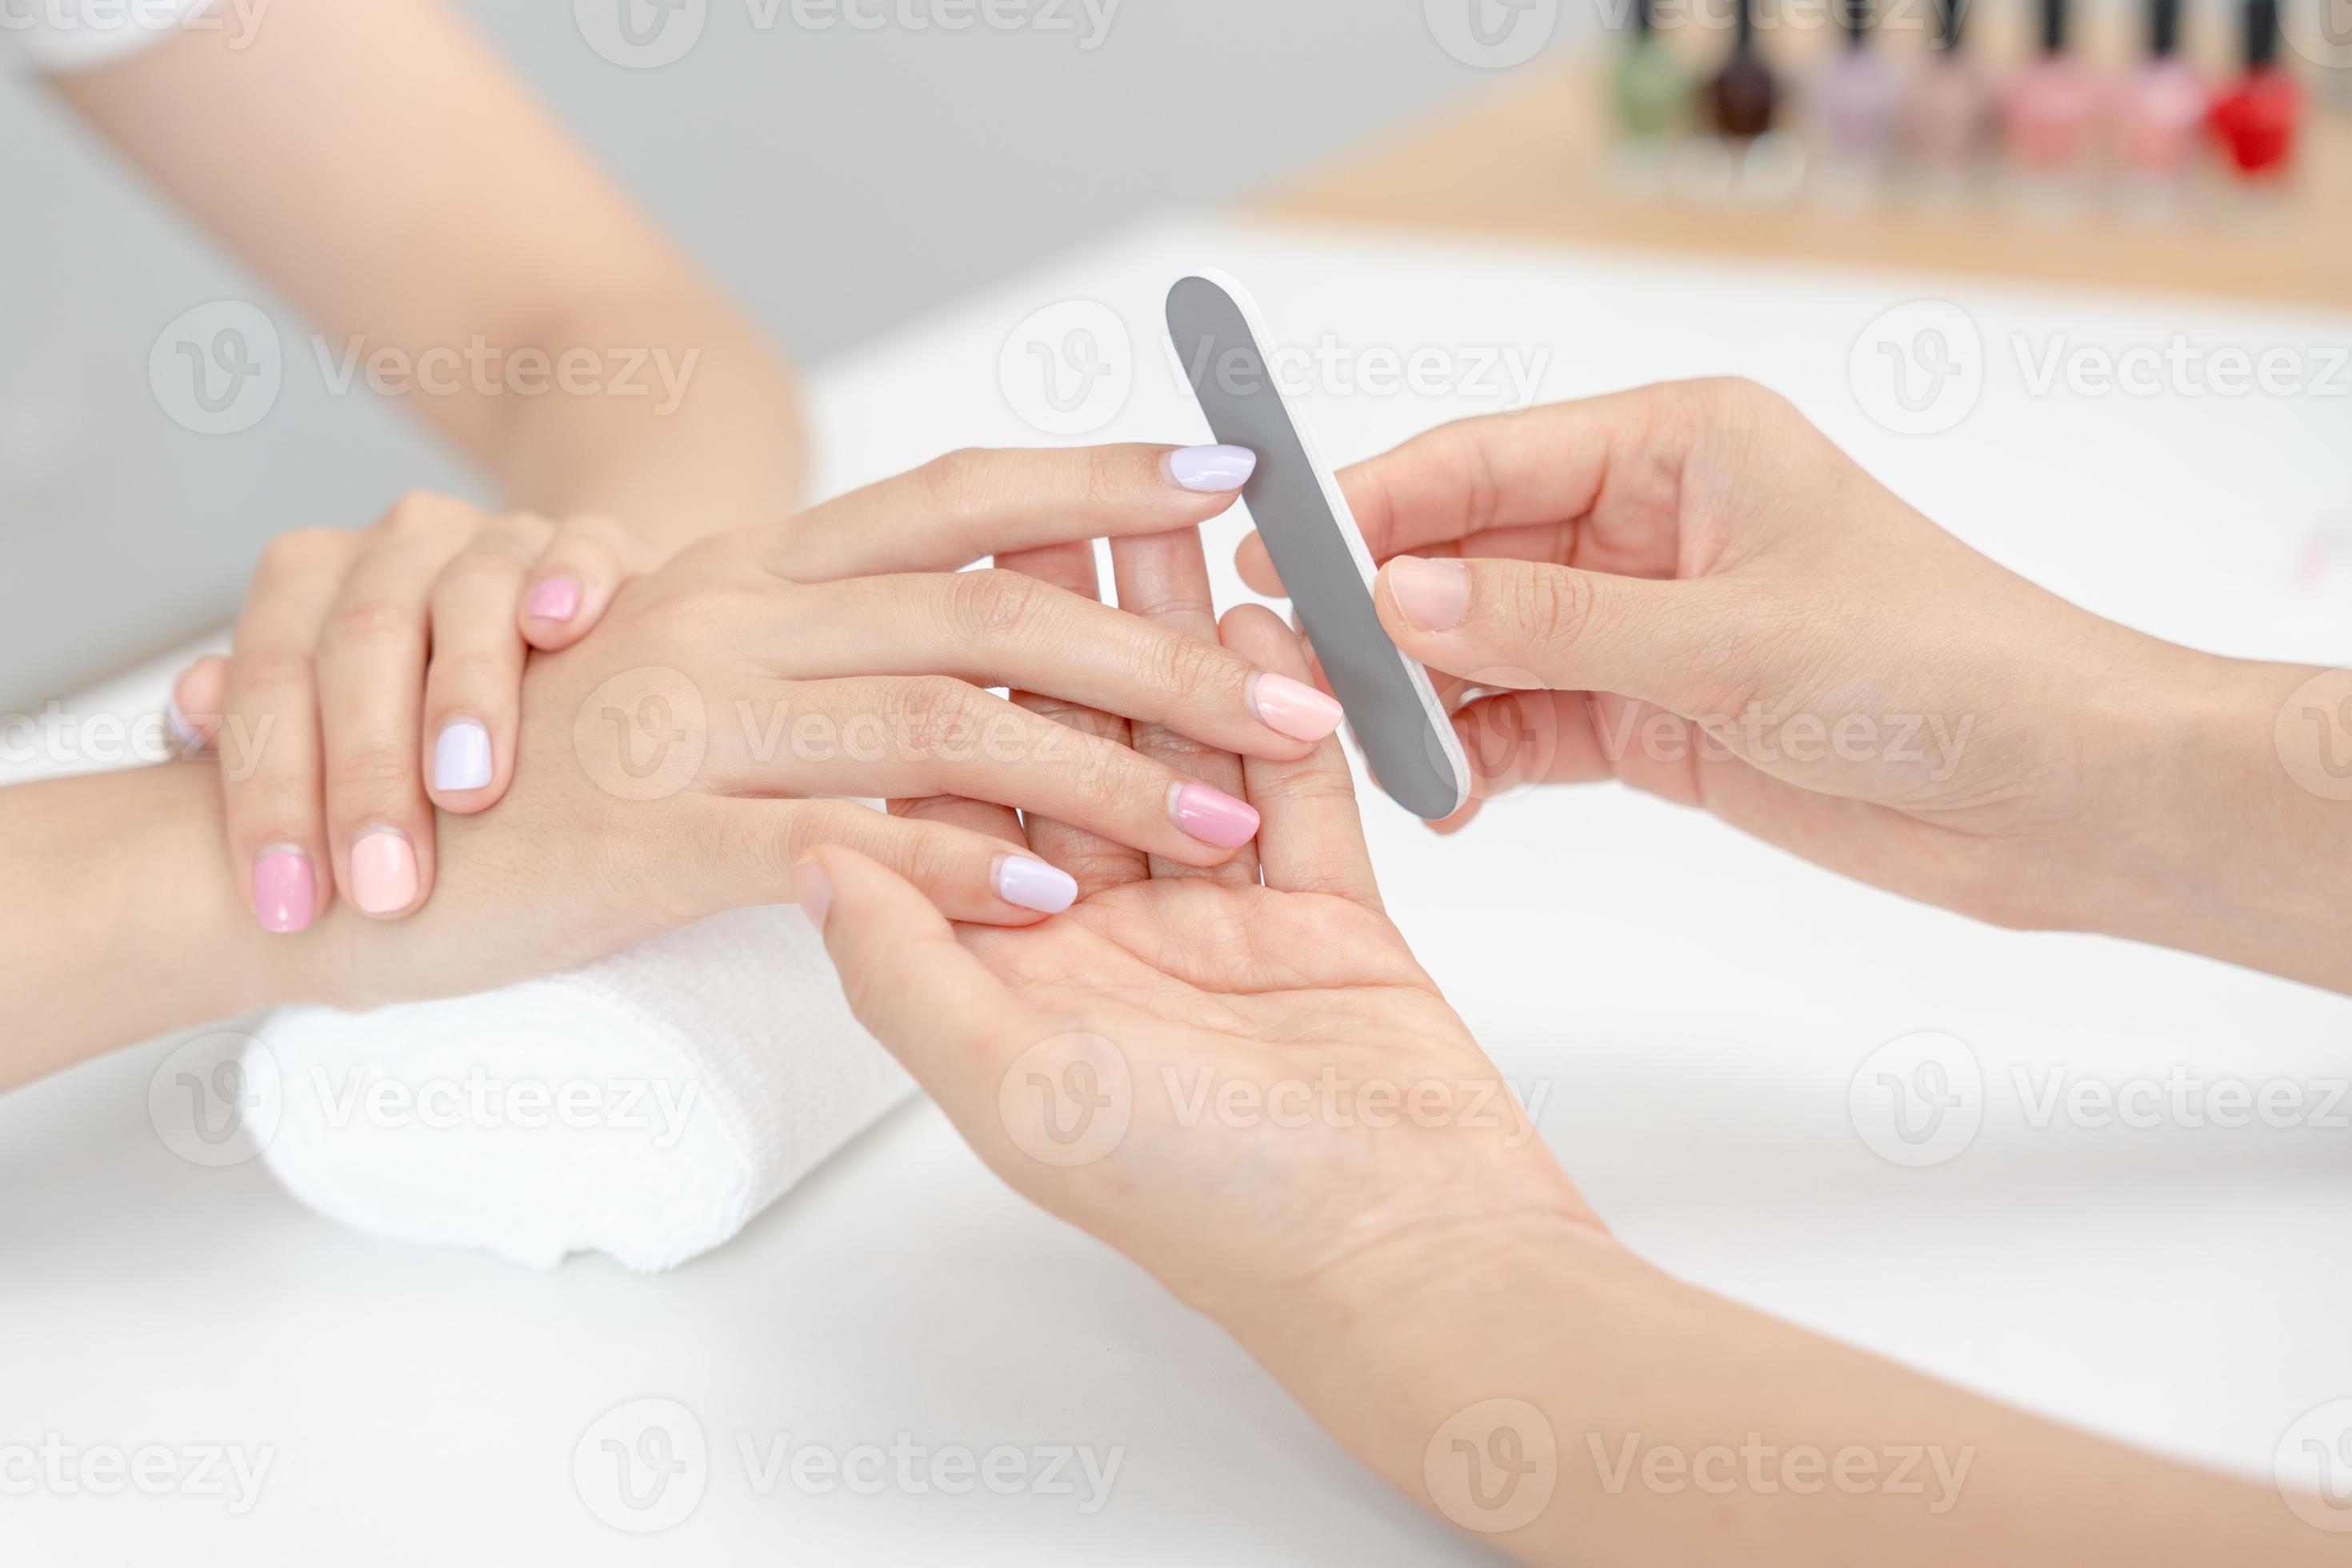 Jeune Femme Recevant Une Manucure à L'aérographe Dans Un Salon De Manucure.  Procédure De Pulvérisation De Peinture Sur Les Ongles